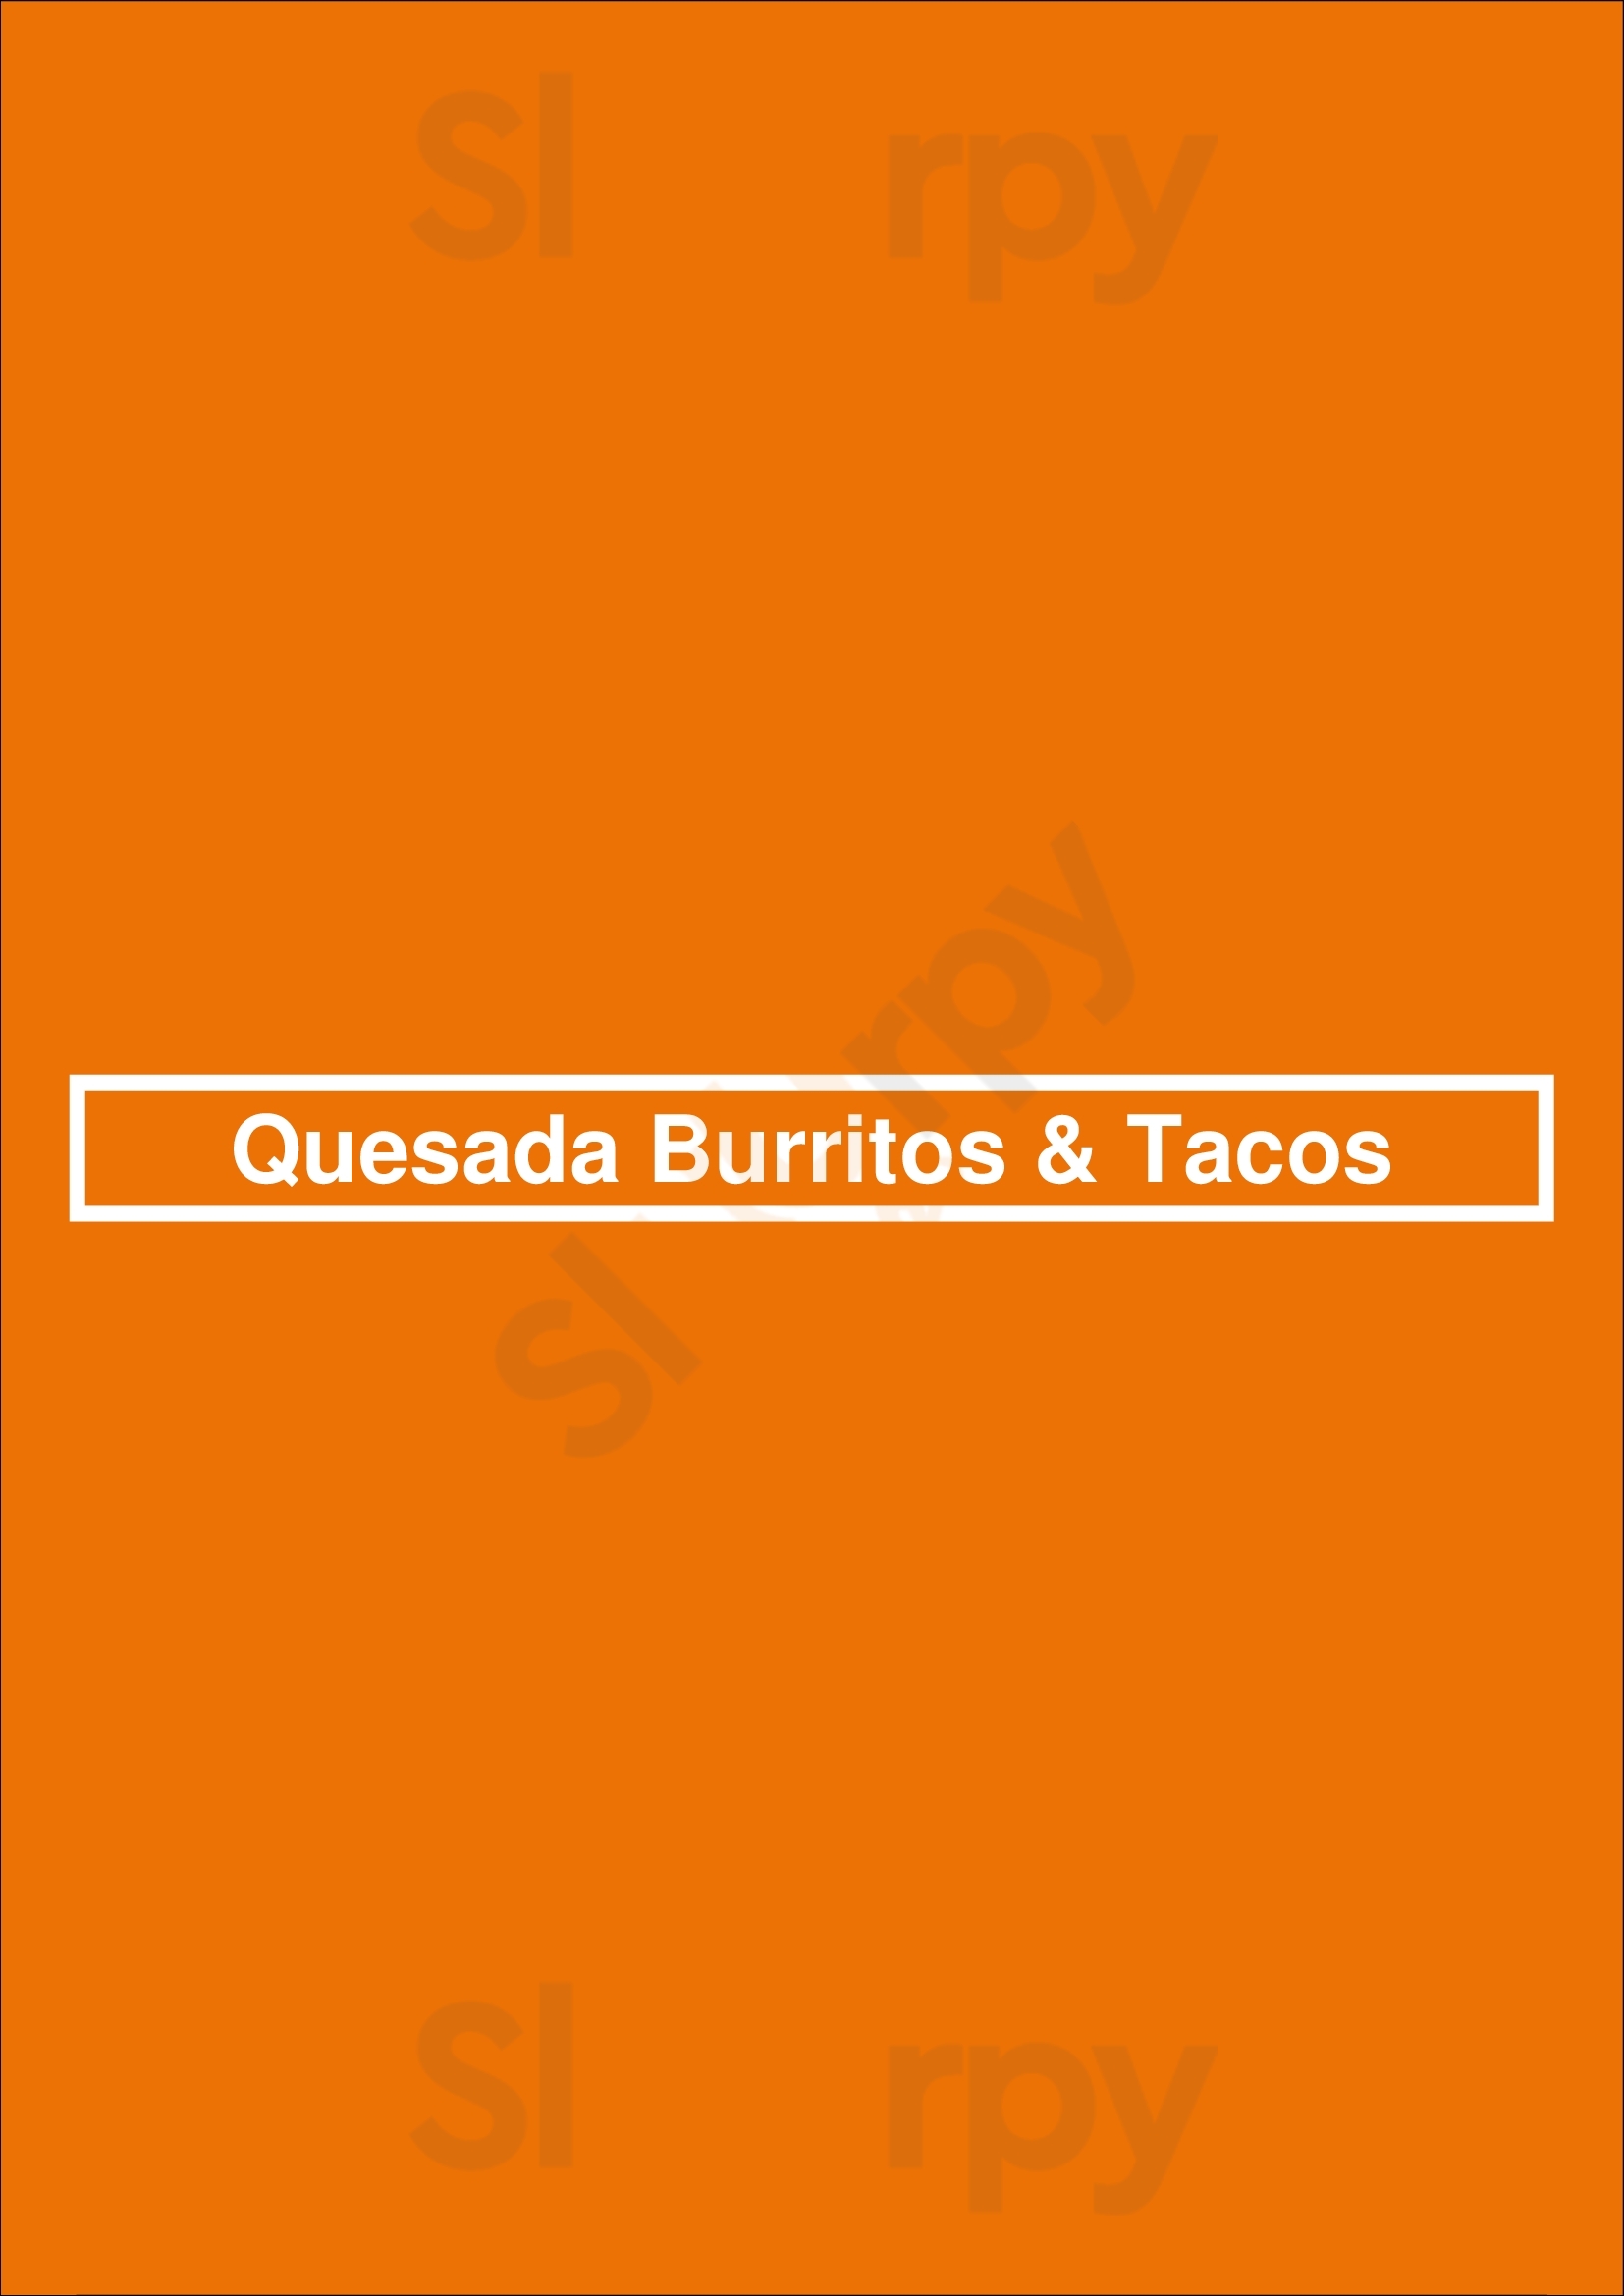 Quesada Burritos & Tacos Toronto Menu - 1